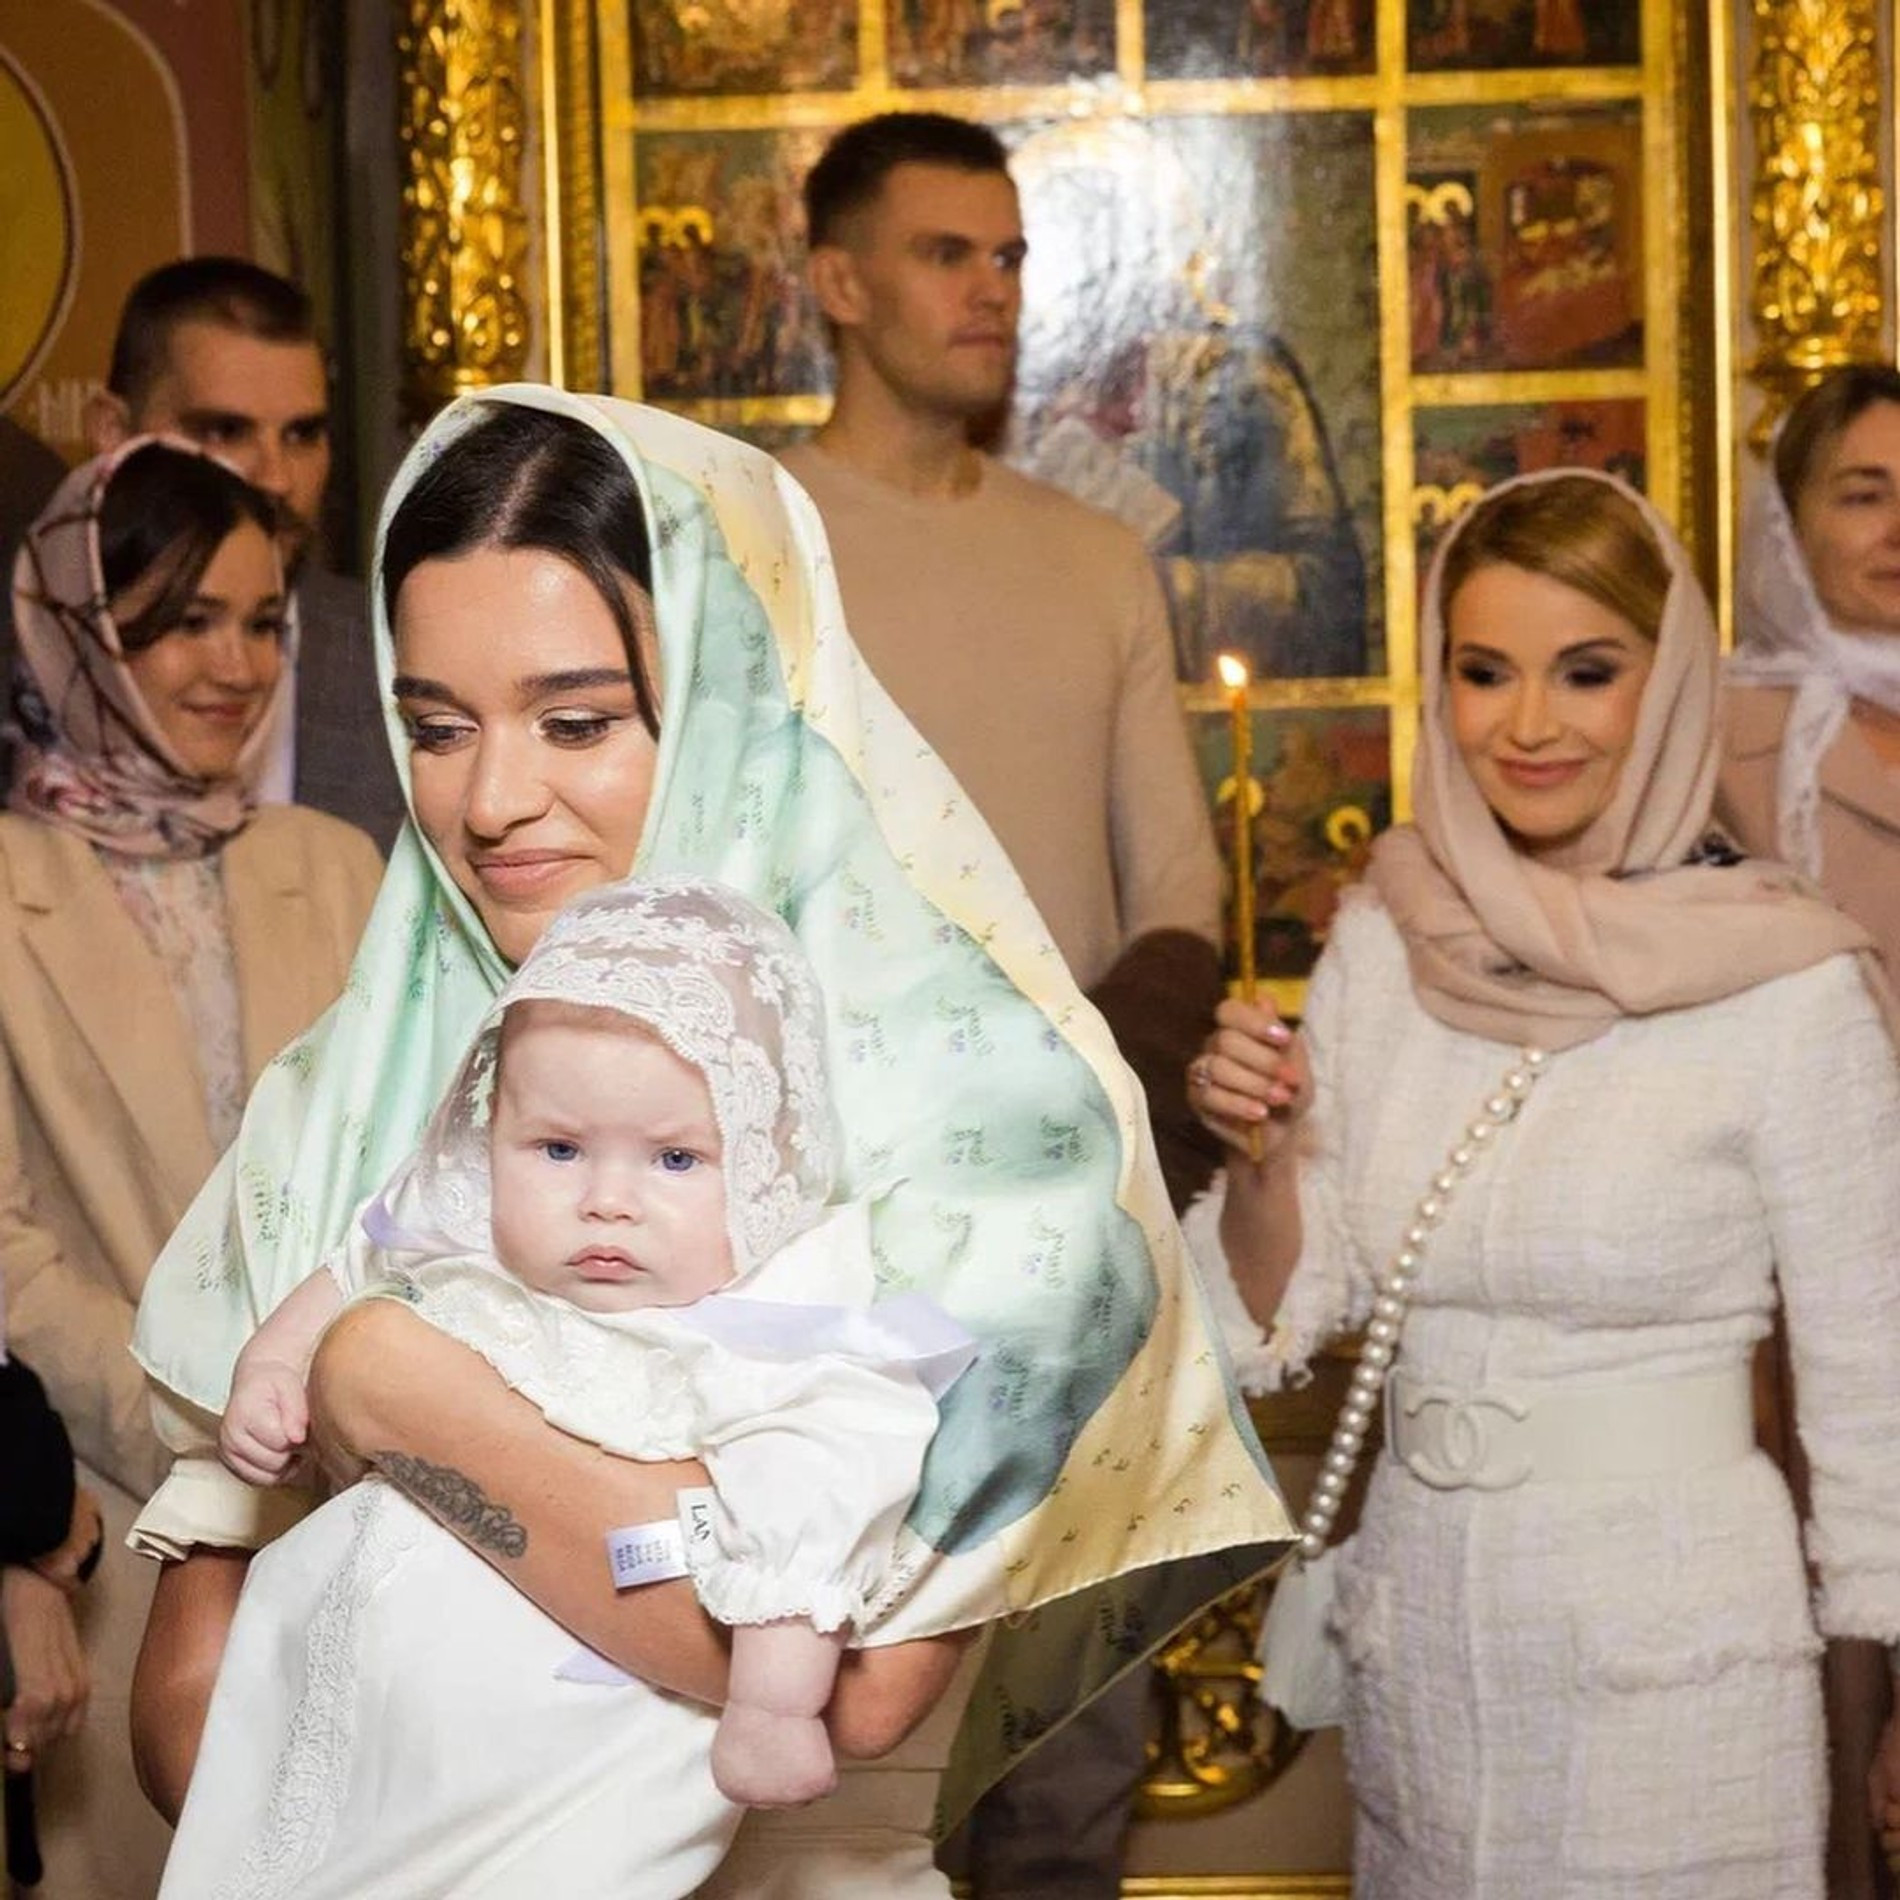 Ксения с Анной на руках и Ольга во время крещения
Фото: Инстаграм* @borodylia